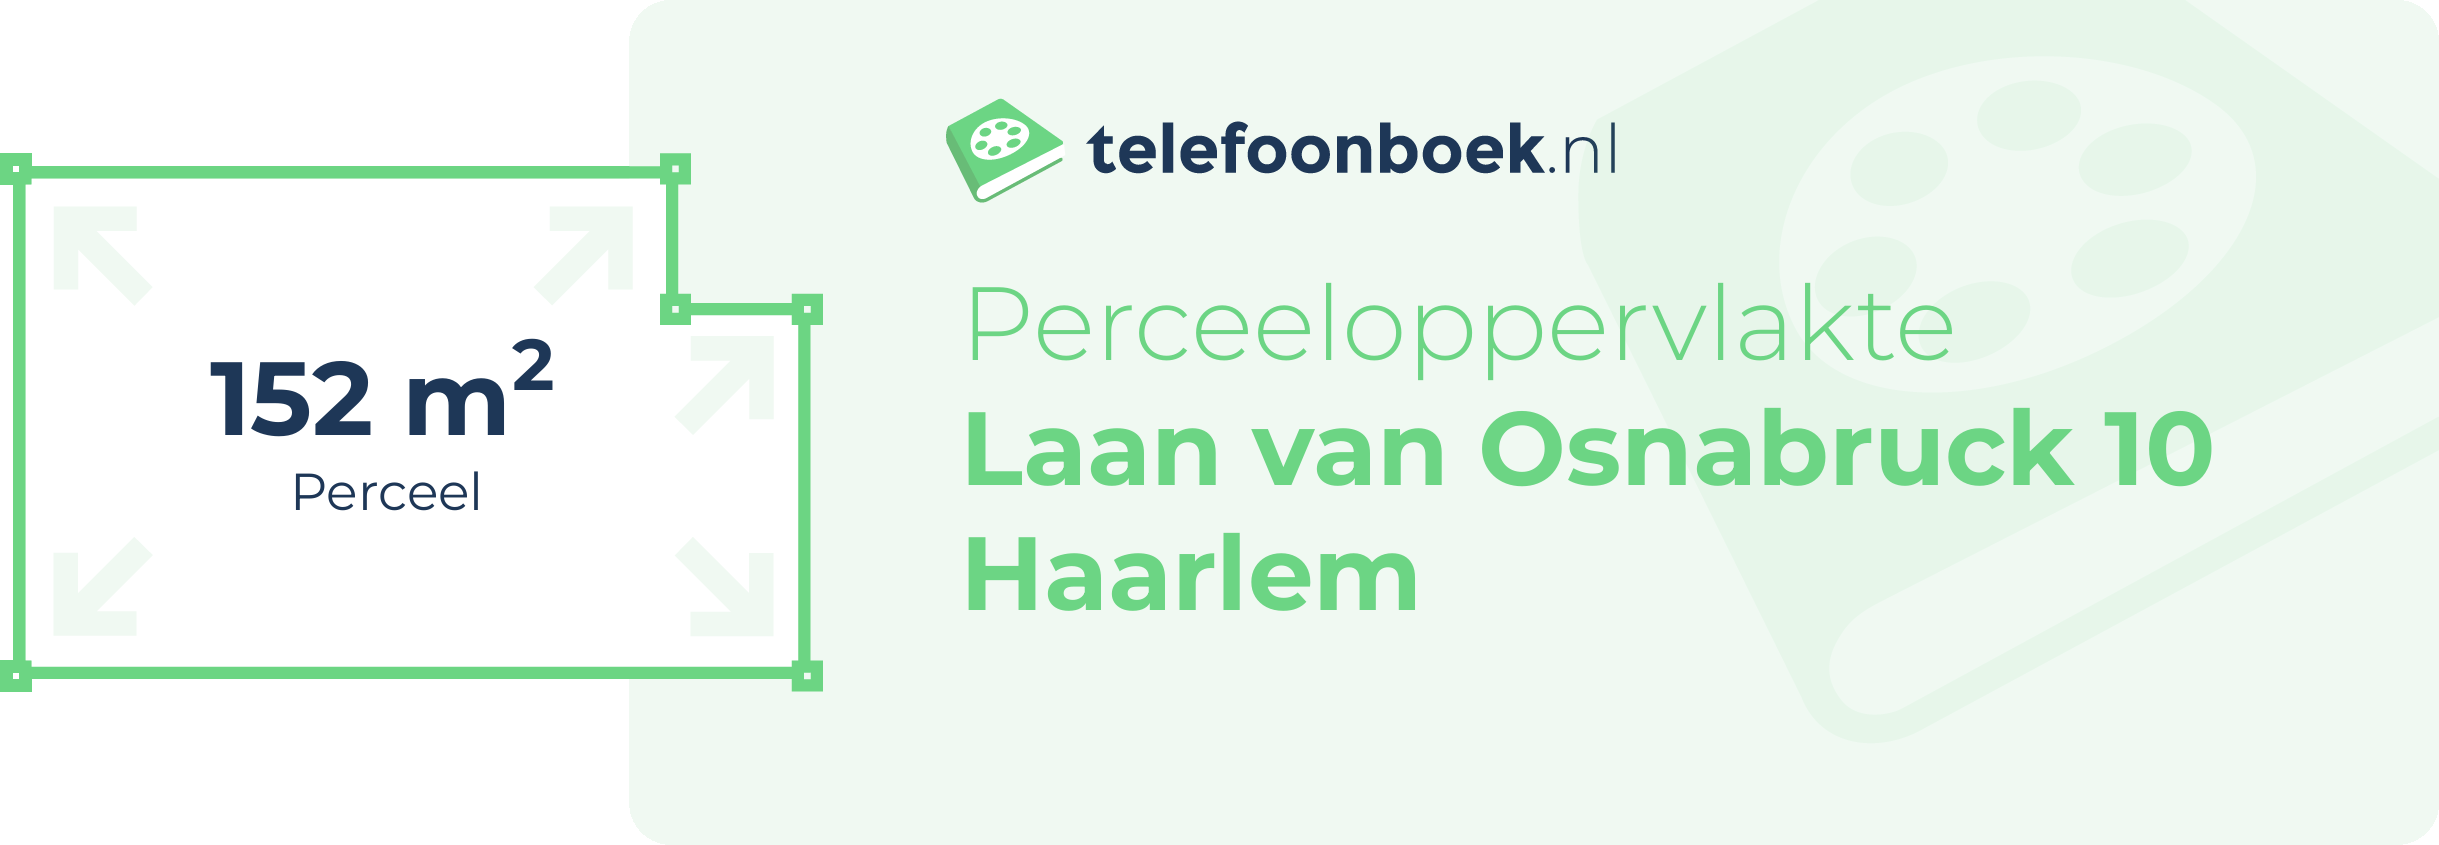 Perceeloppervlakte Laan Van Osnabruck 10 Haarlem